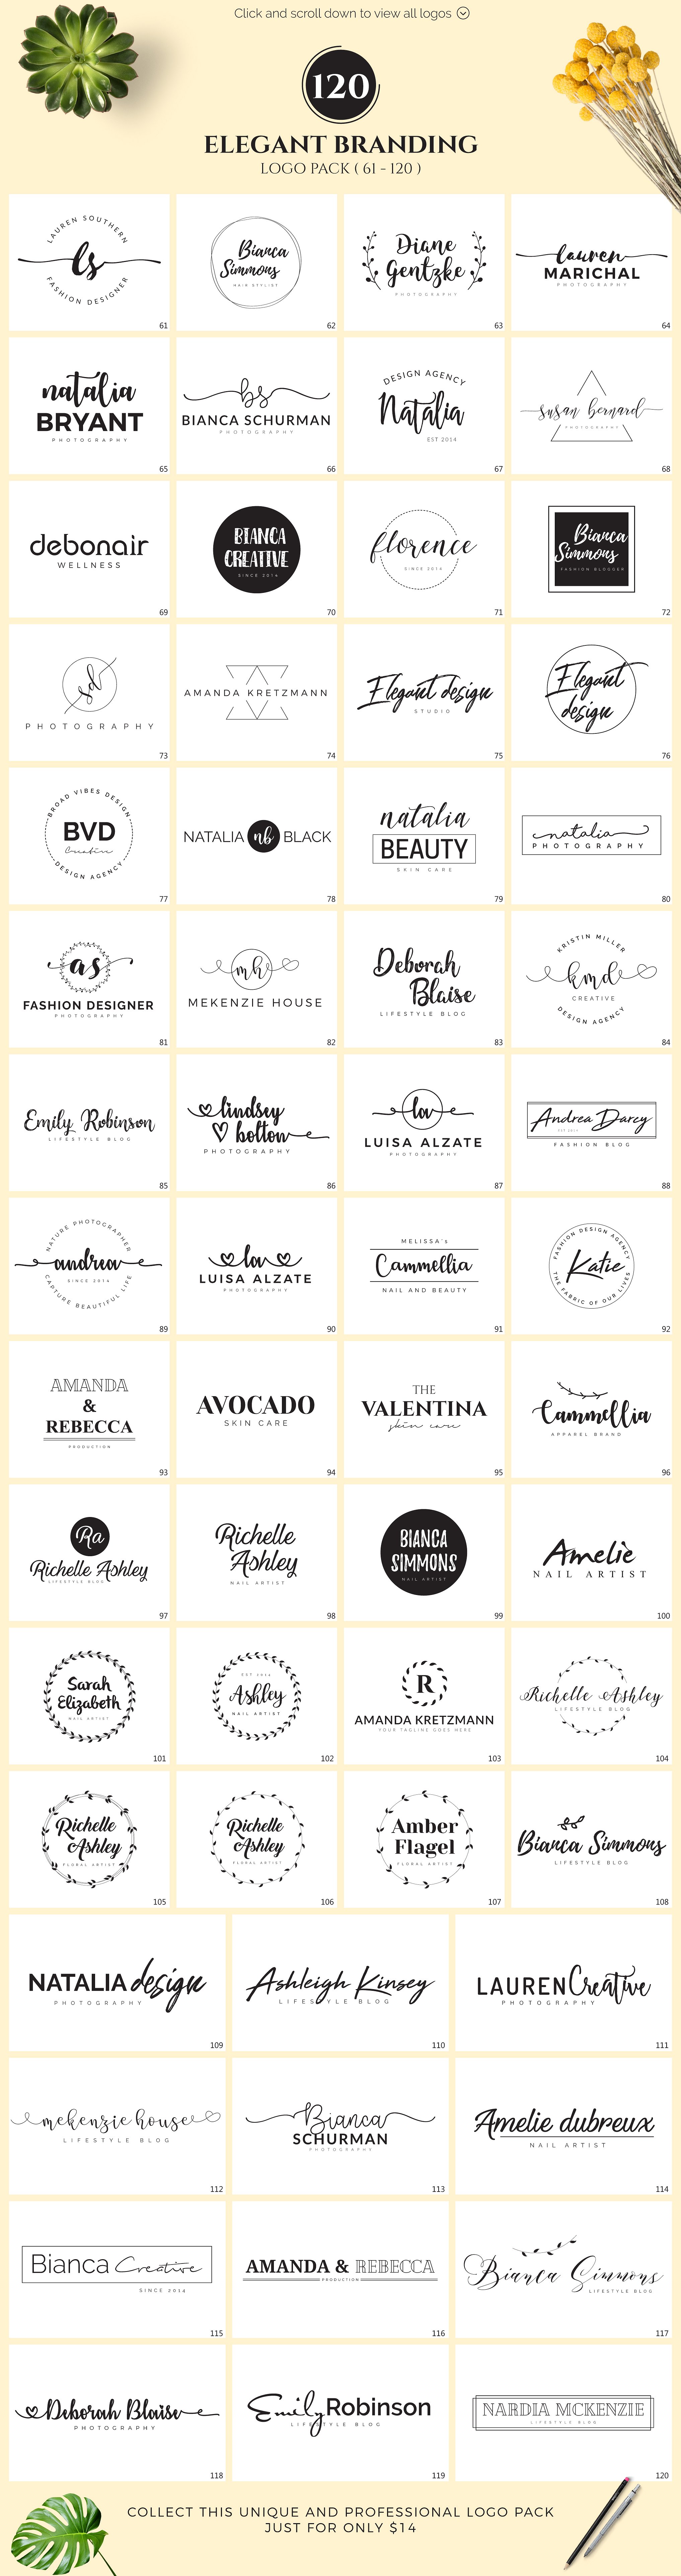 120款优雅的品牌标识完美的集合 120 Elegant Branding Logo Pack插图3